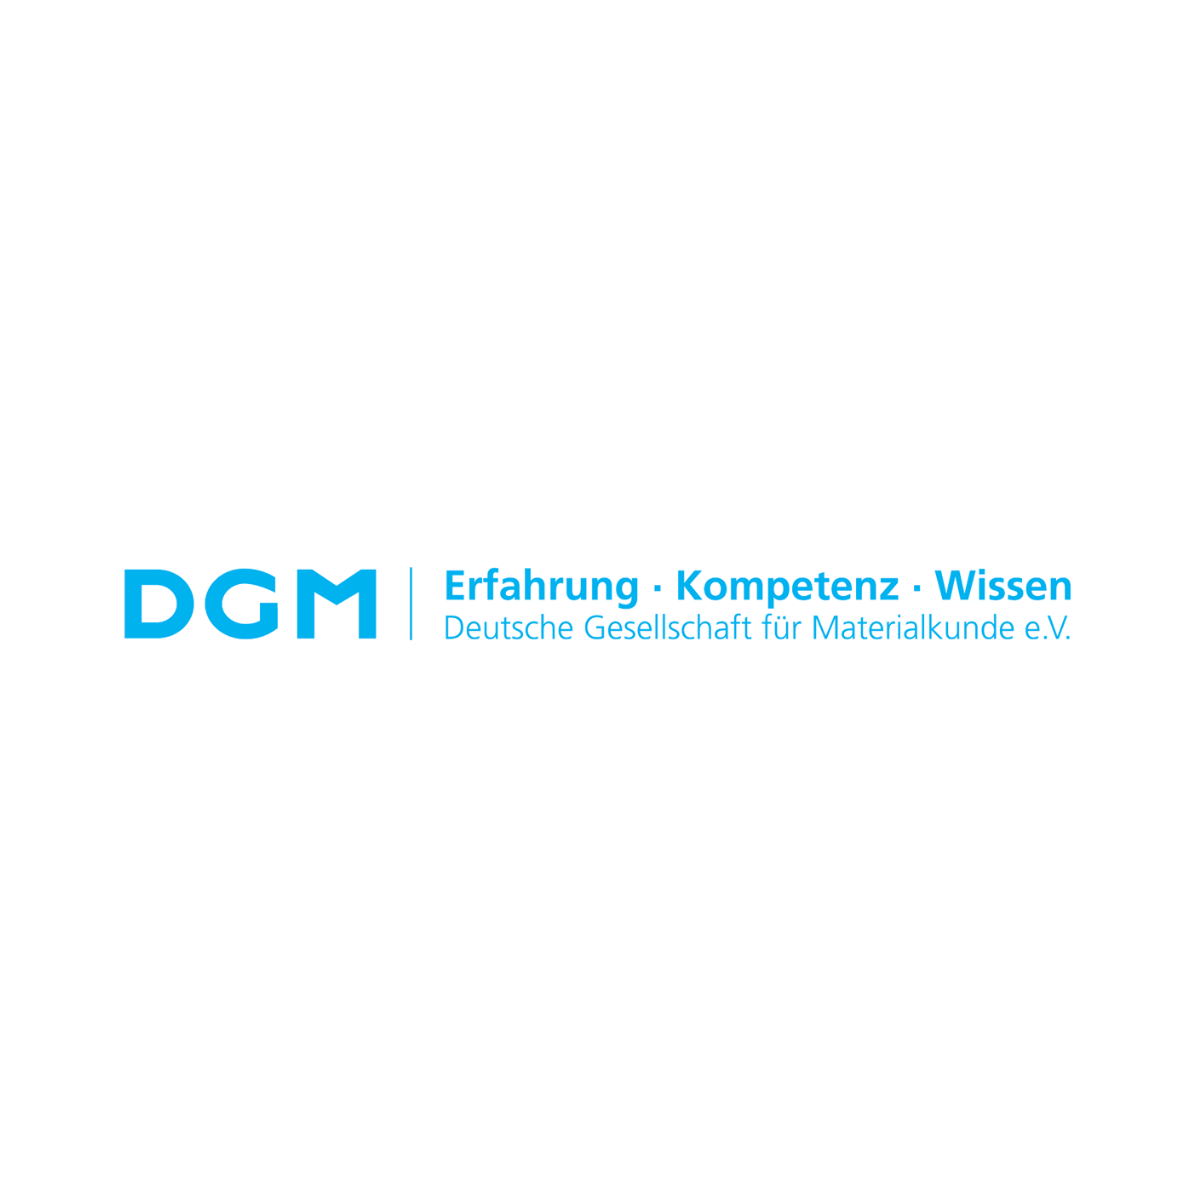 DGM Deutsch Gesellschaft für Materialkunde e.V.